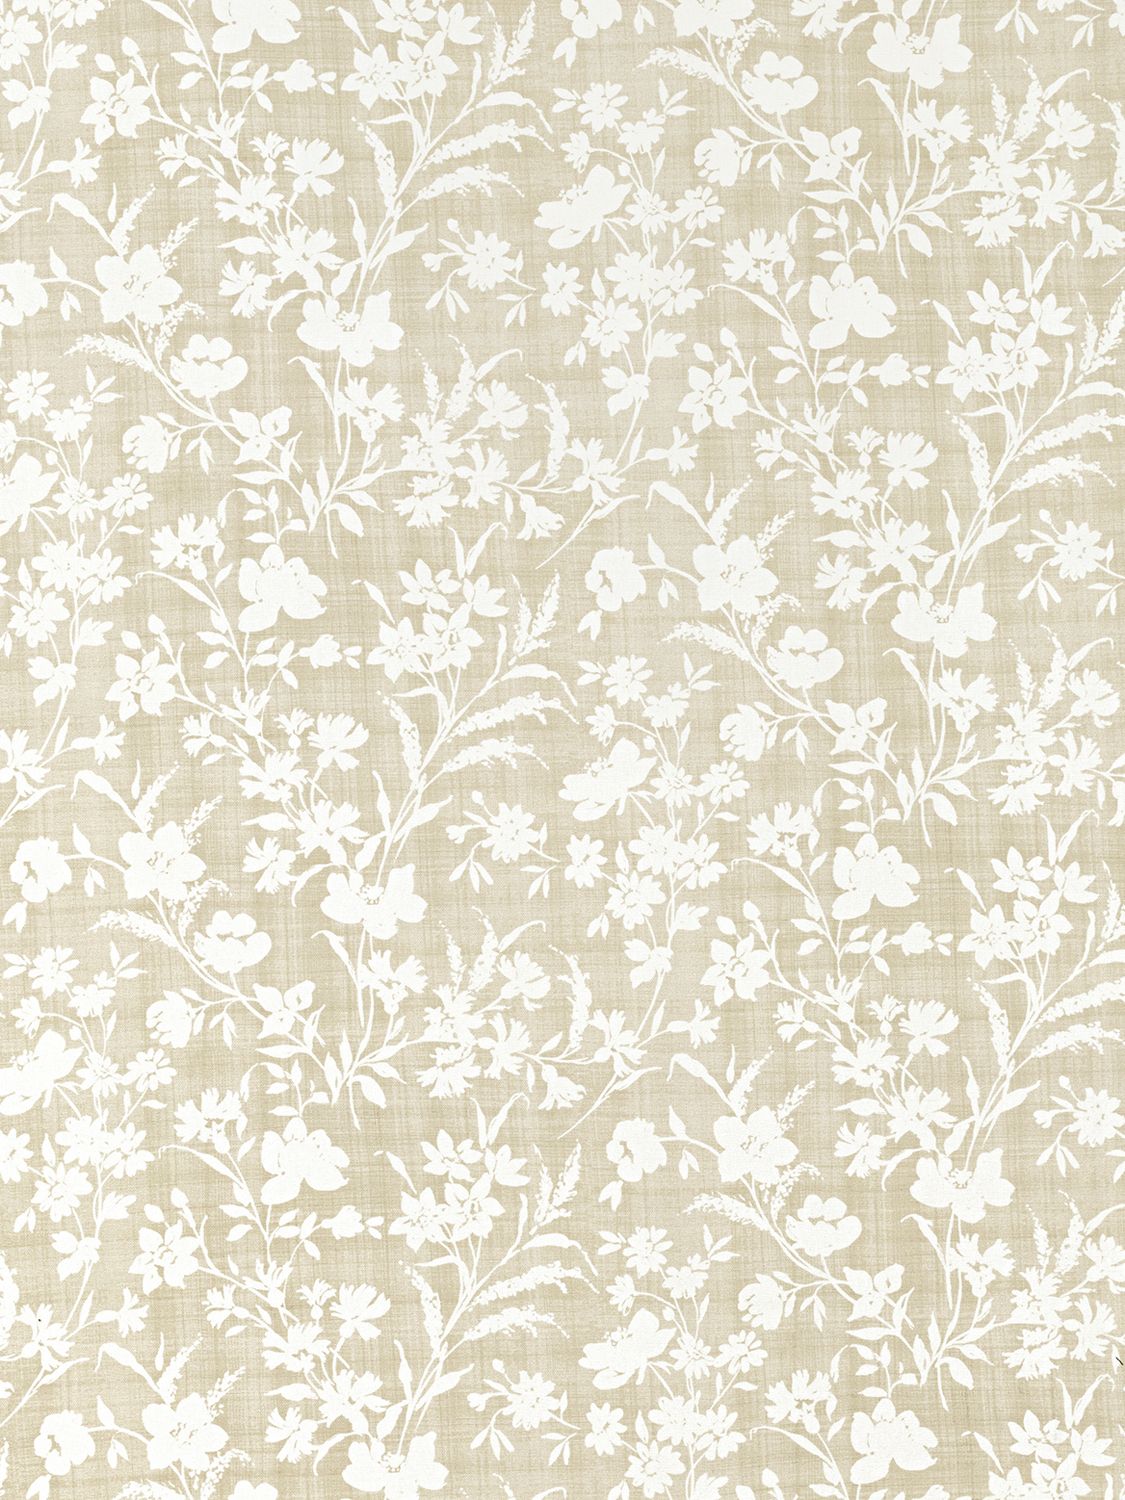 Laura Ashley Rye Furnishing Fabric, Dove Grey